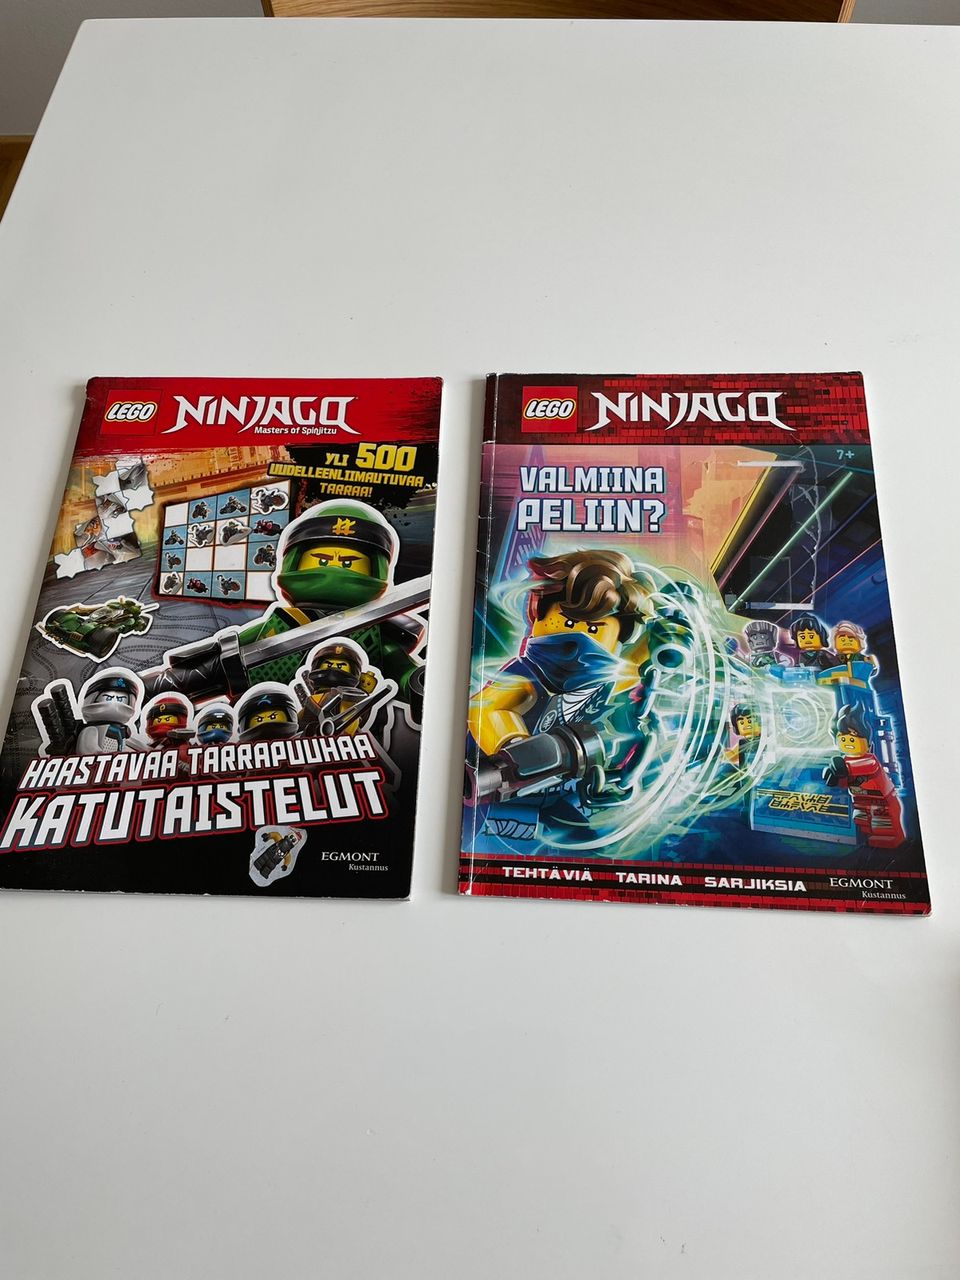 Lego Ninjago puuhalehtiä ja julisteita